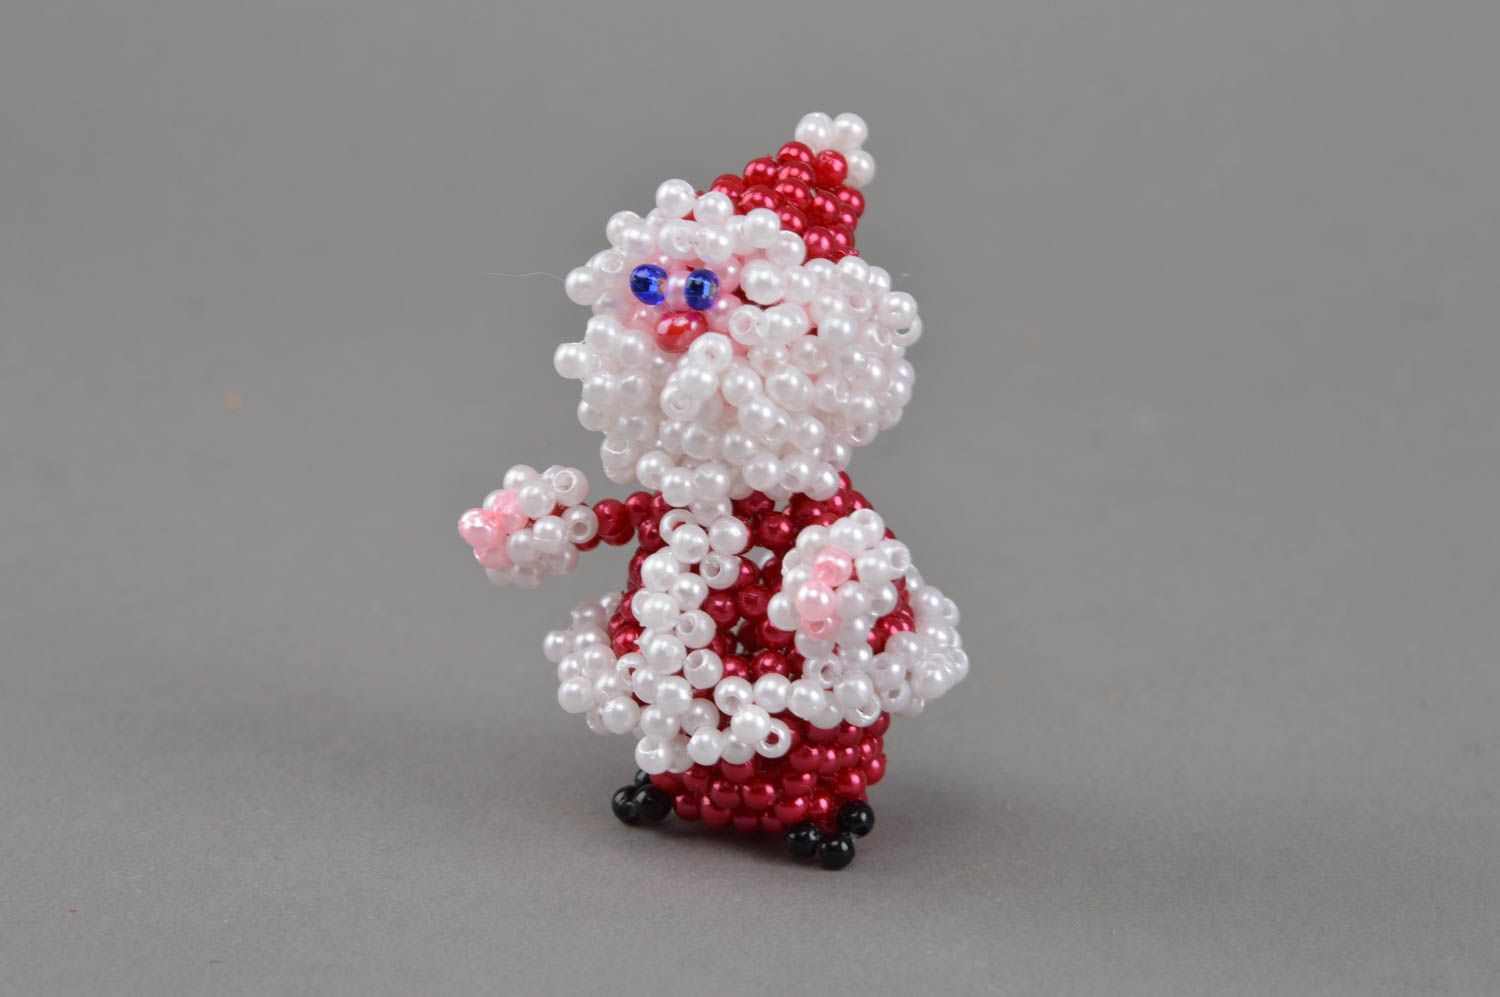 Handmade schöne Deko Figurine Weihnachtsmann aus Glasperlen originell schön foto 2